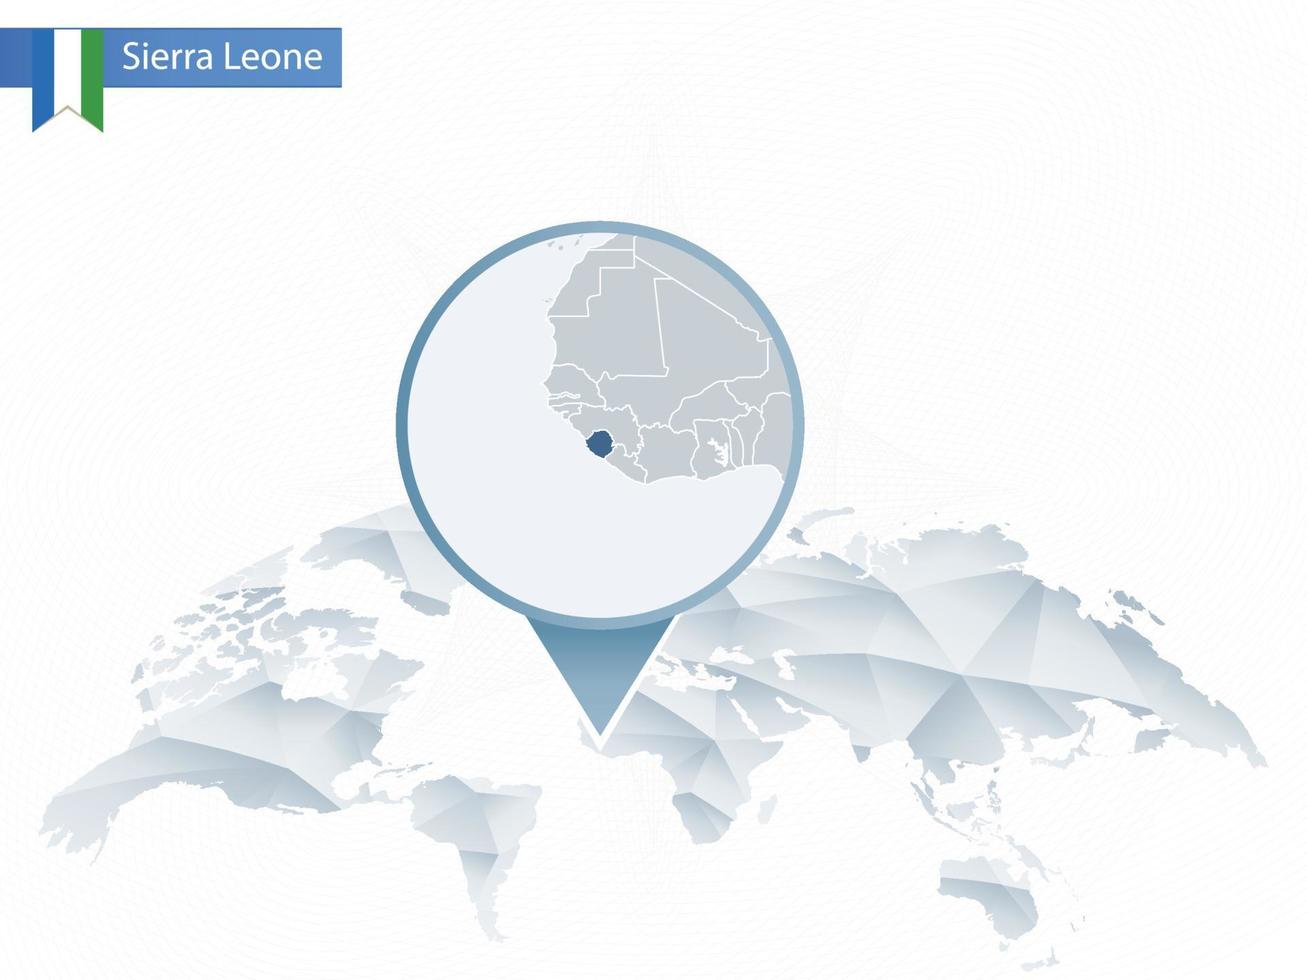 mappa del mondo arrotondata astratta con mappa dettagliata della sierra leone appuntata. vettore